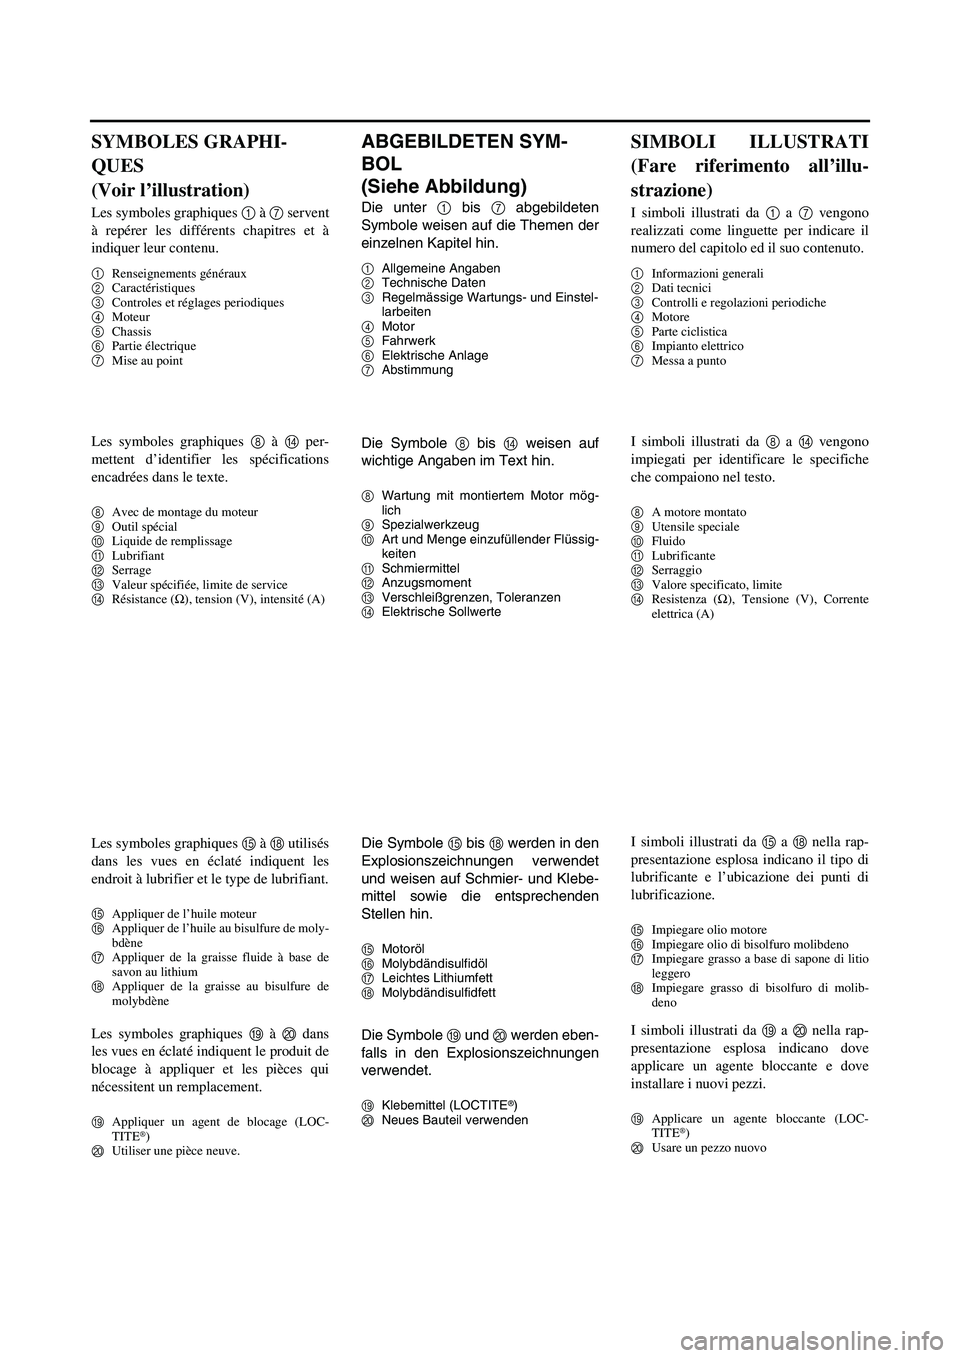 YAMAHA YZ250F 2007 User Guide ABGEBILDETEN SYM-
BOL 
(Siehe Abbildung)
Die unter 1 bis 7 abgebildeten
Symbole weisen auf die Themen der
einzelnen Kapitel hin.
1Allgemeine Angaben
2Technische Daten
3Regelmässige Wartungs- und Eins